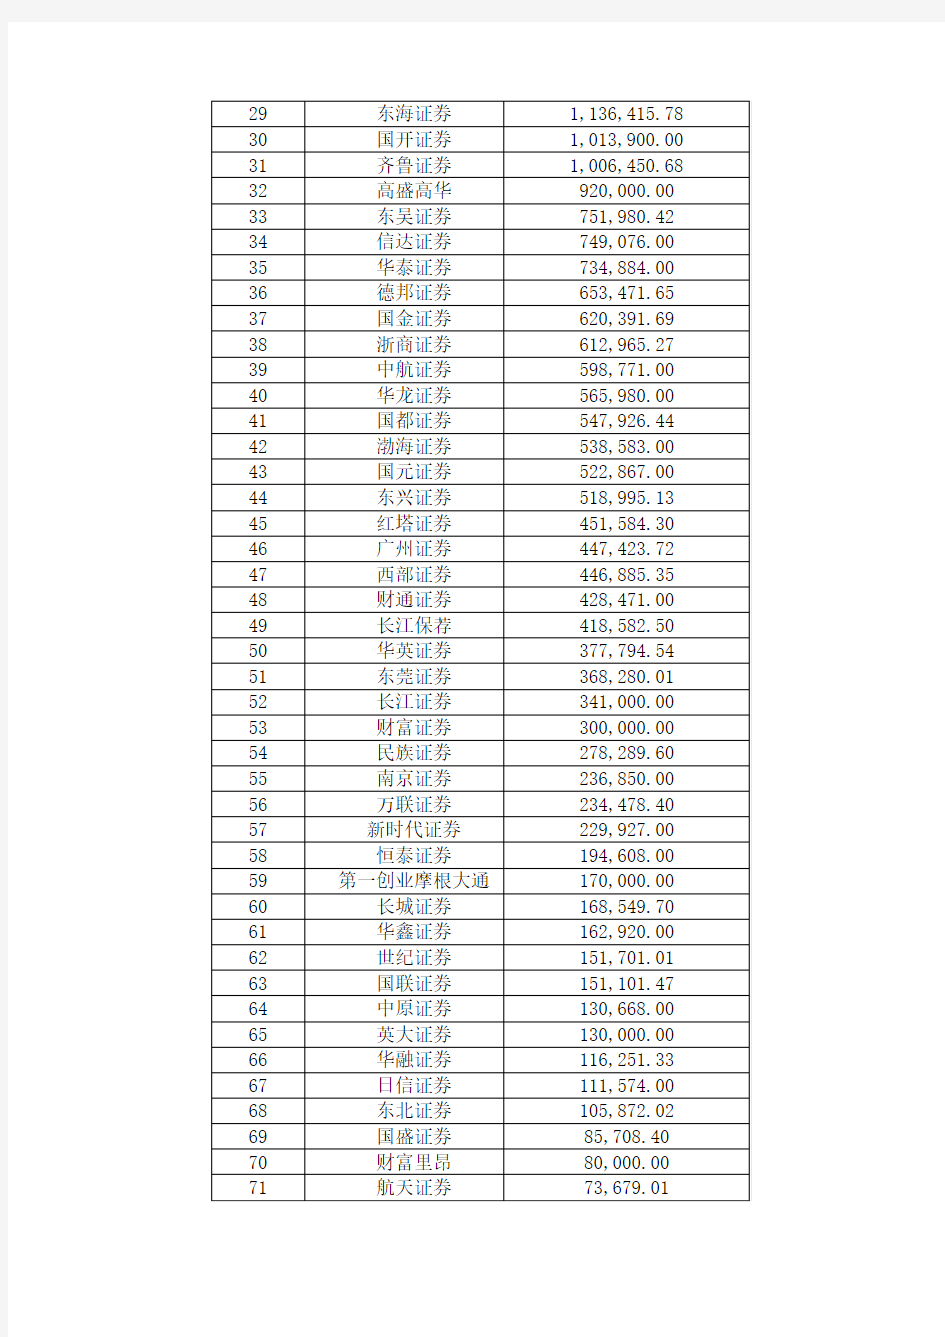 协会公布2011年度证券公司会员证券承销业务排名情况-20120328